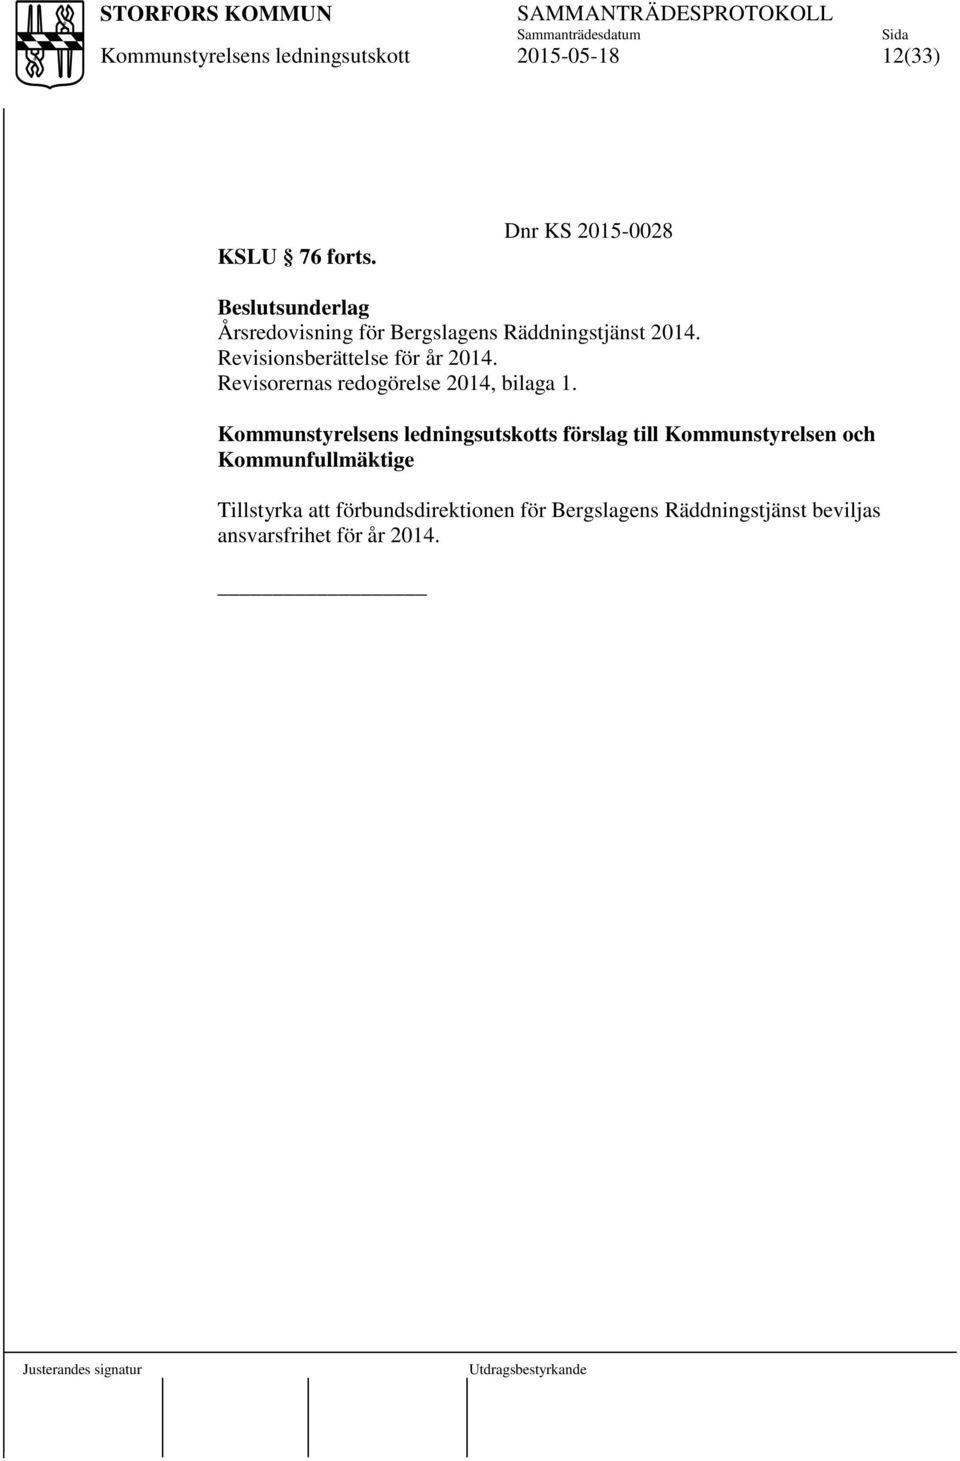 Revisionsberättelse för år 2014. Revisorernas redogörelse 2014, bilaga 1.